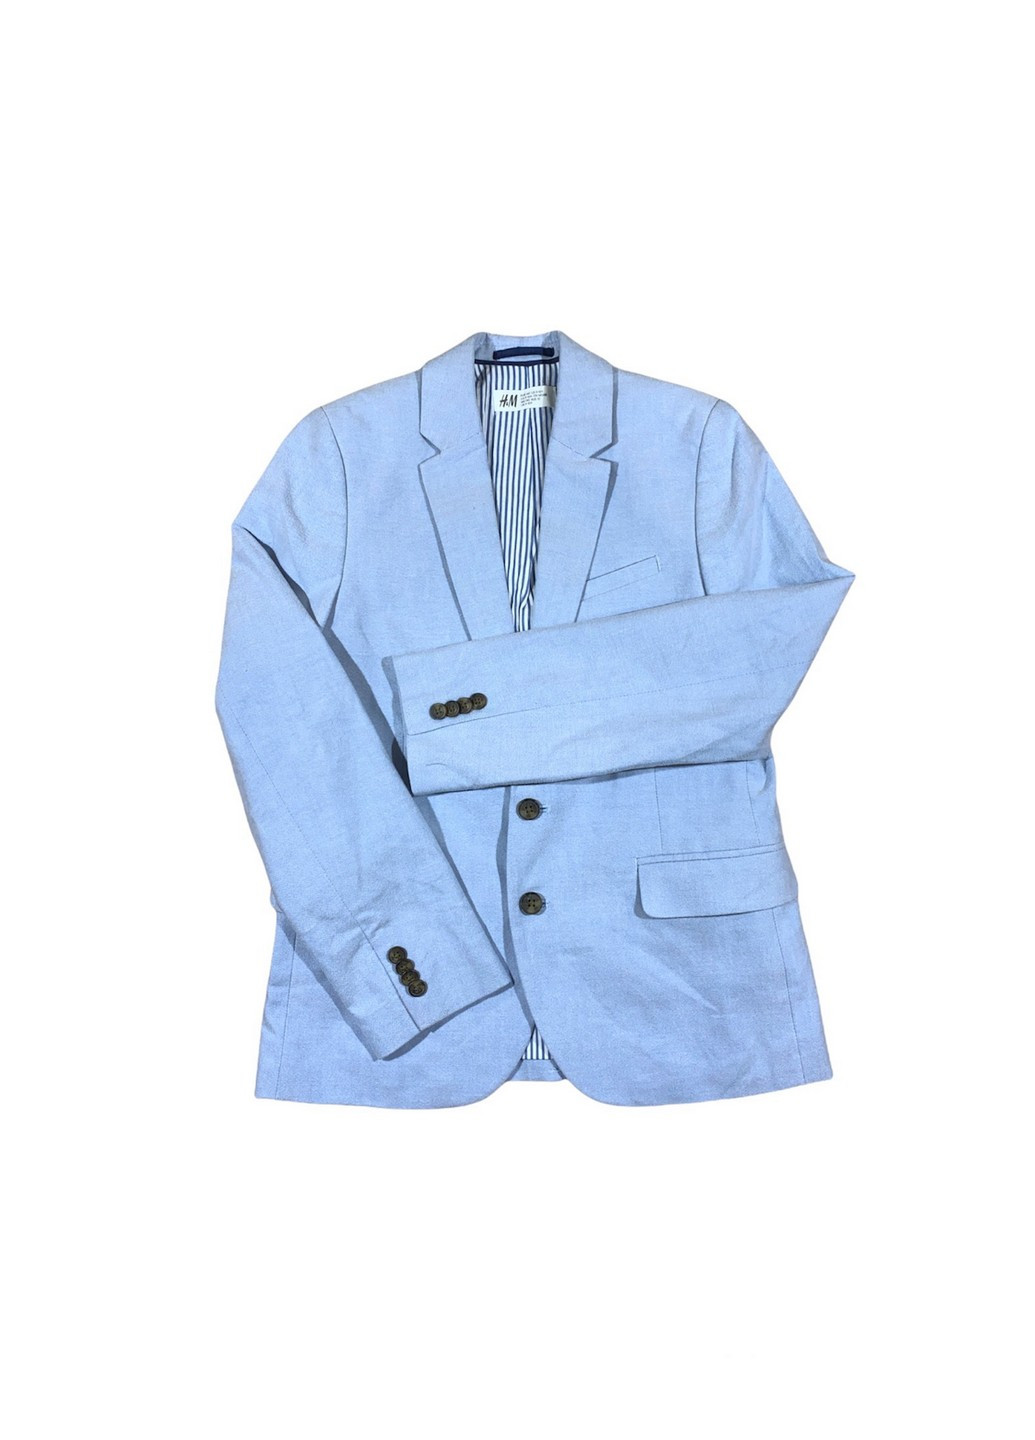 Пиджак H&M однотонный голубой деловой хлопок